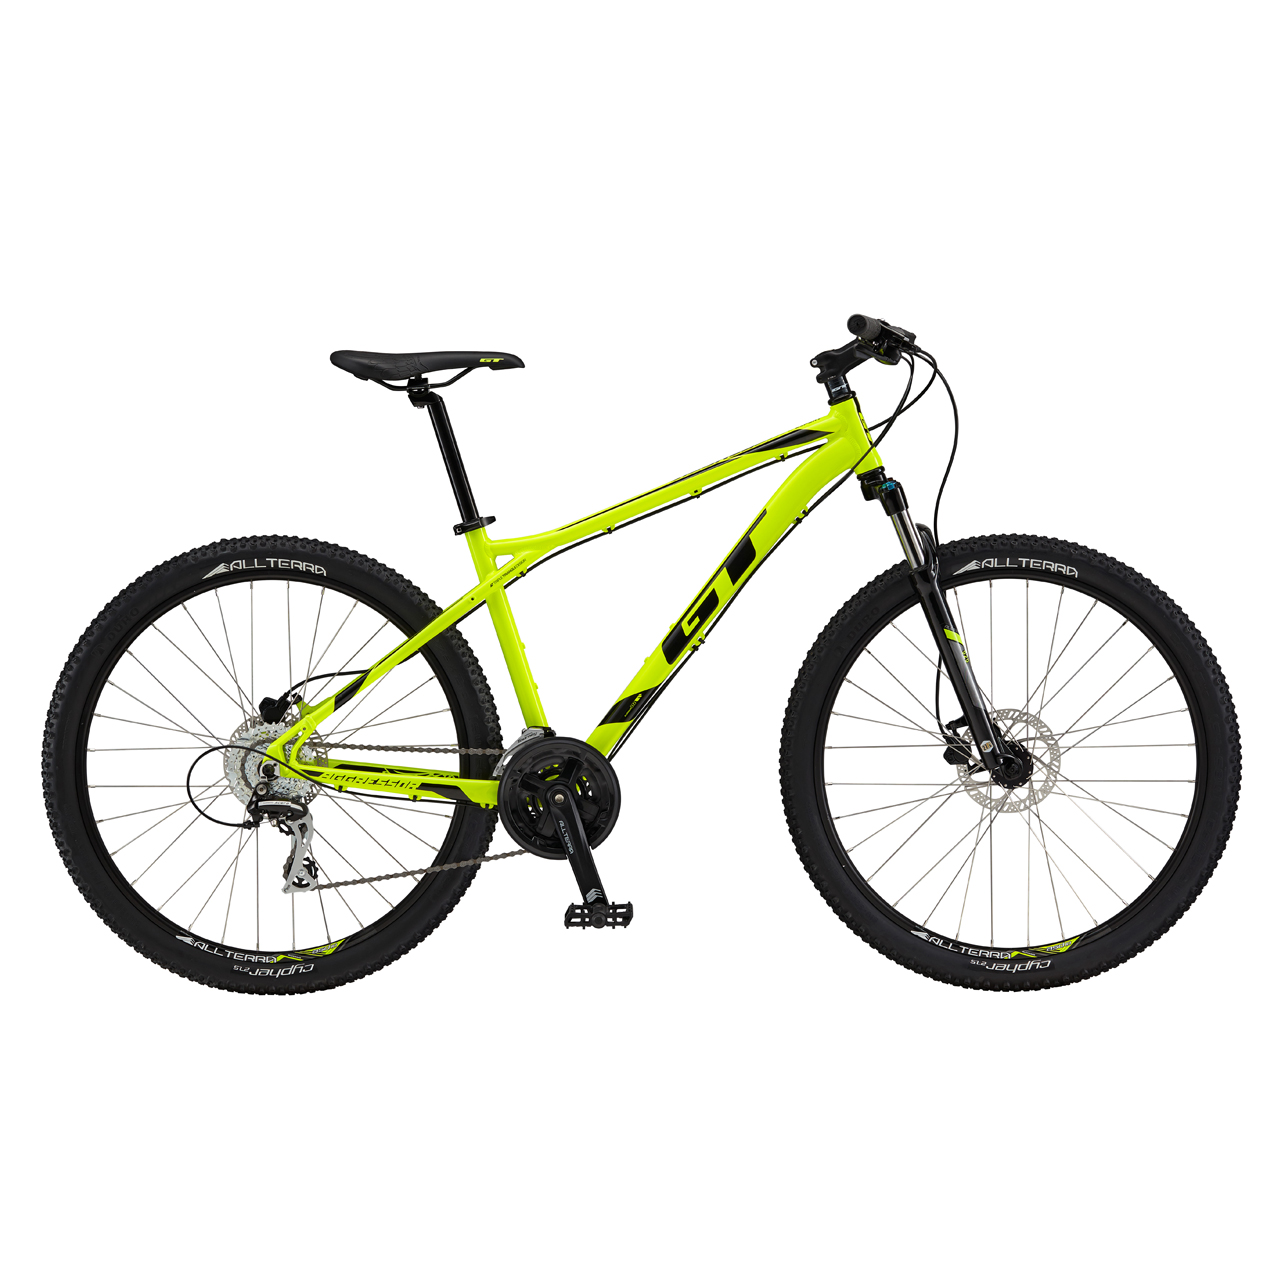 دوچرخه کوهستان جی تی Aggressor Expert سایز 27.5 رنگ زرد2017